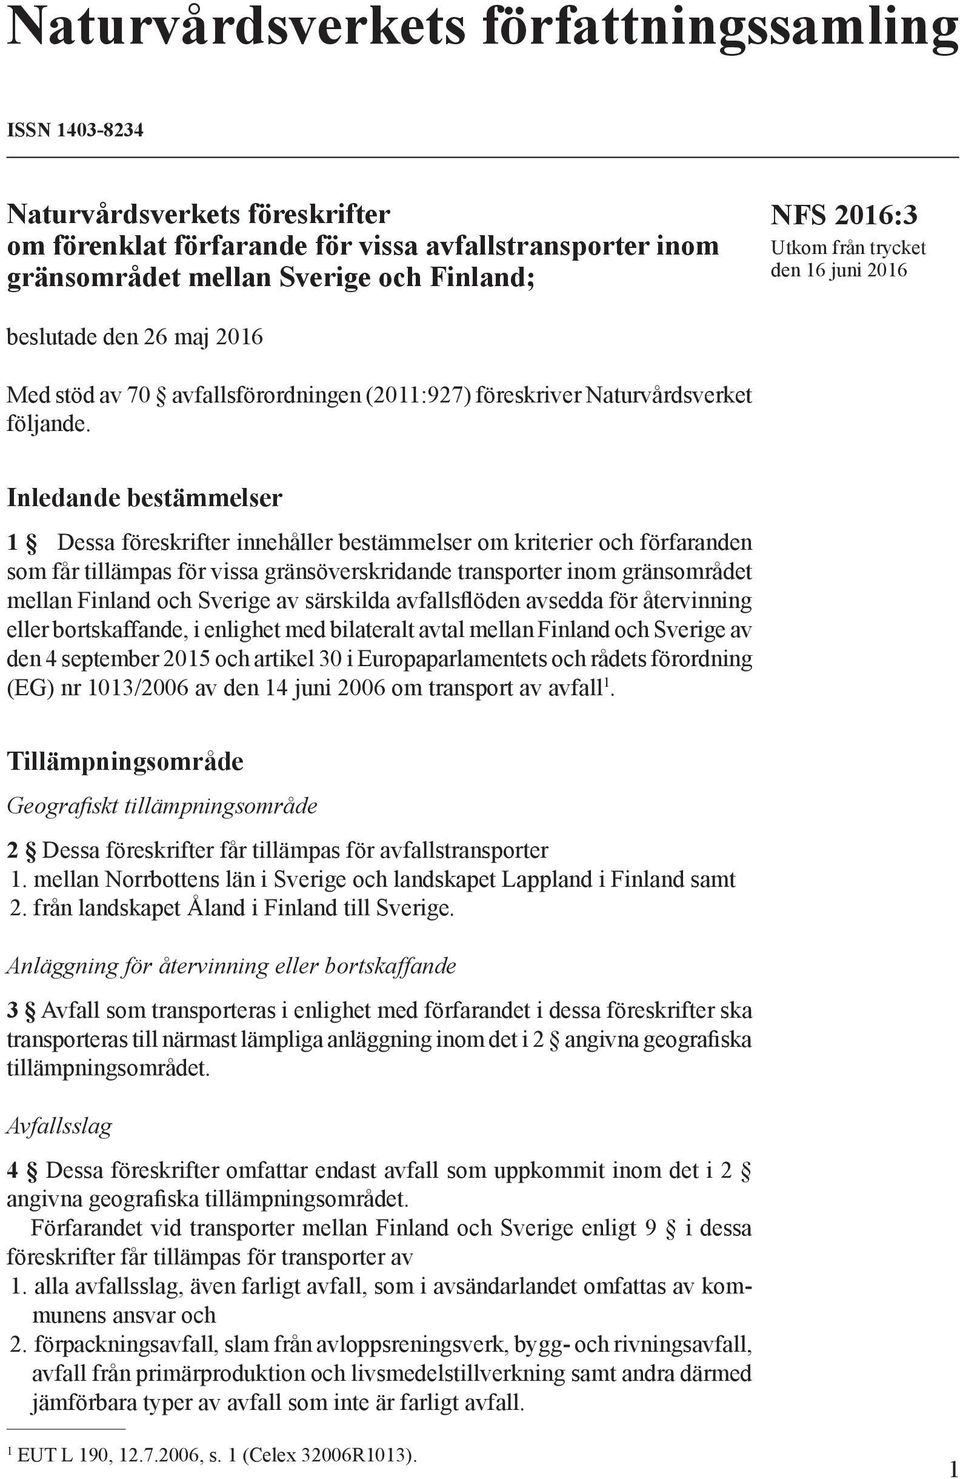 Inledande bestämmelser 1 Dessa föreskrifter innehåller bestämmelser om kriterier och förfaranden som får tillämpas för vissa gränsöverskridande transporter inom gränsområdet mellan Finland och